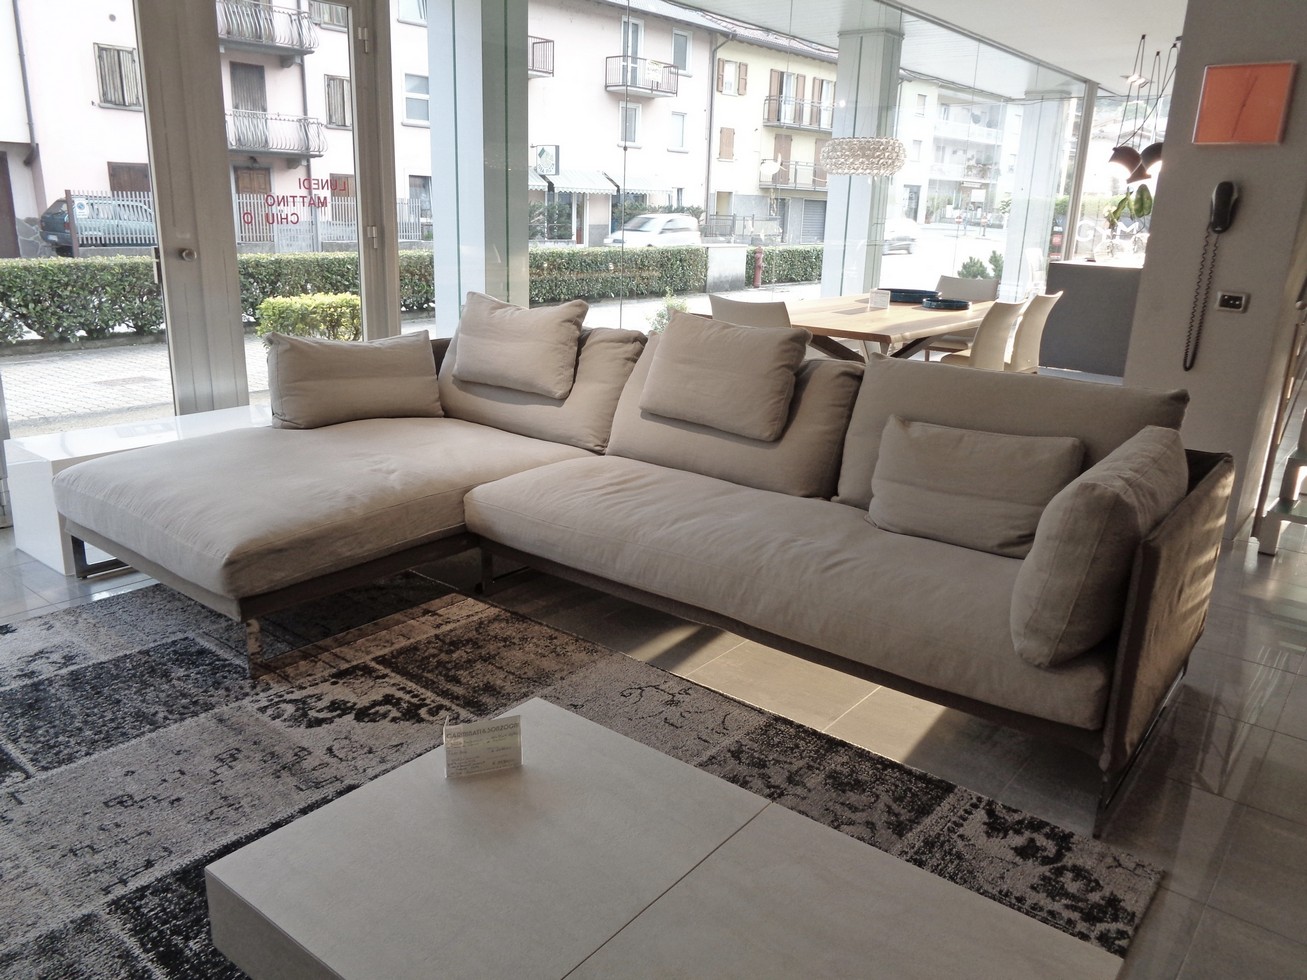 Divani milano offerte gallery of divano con le sedute for Outlet design milano